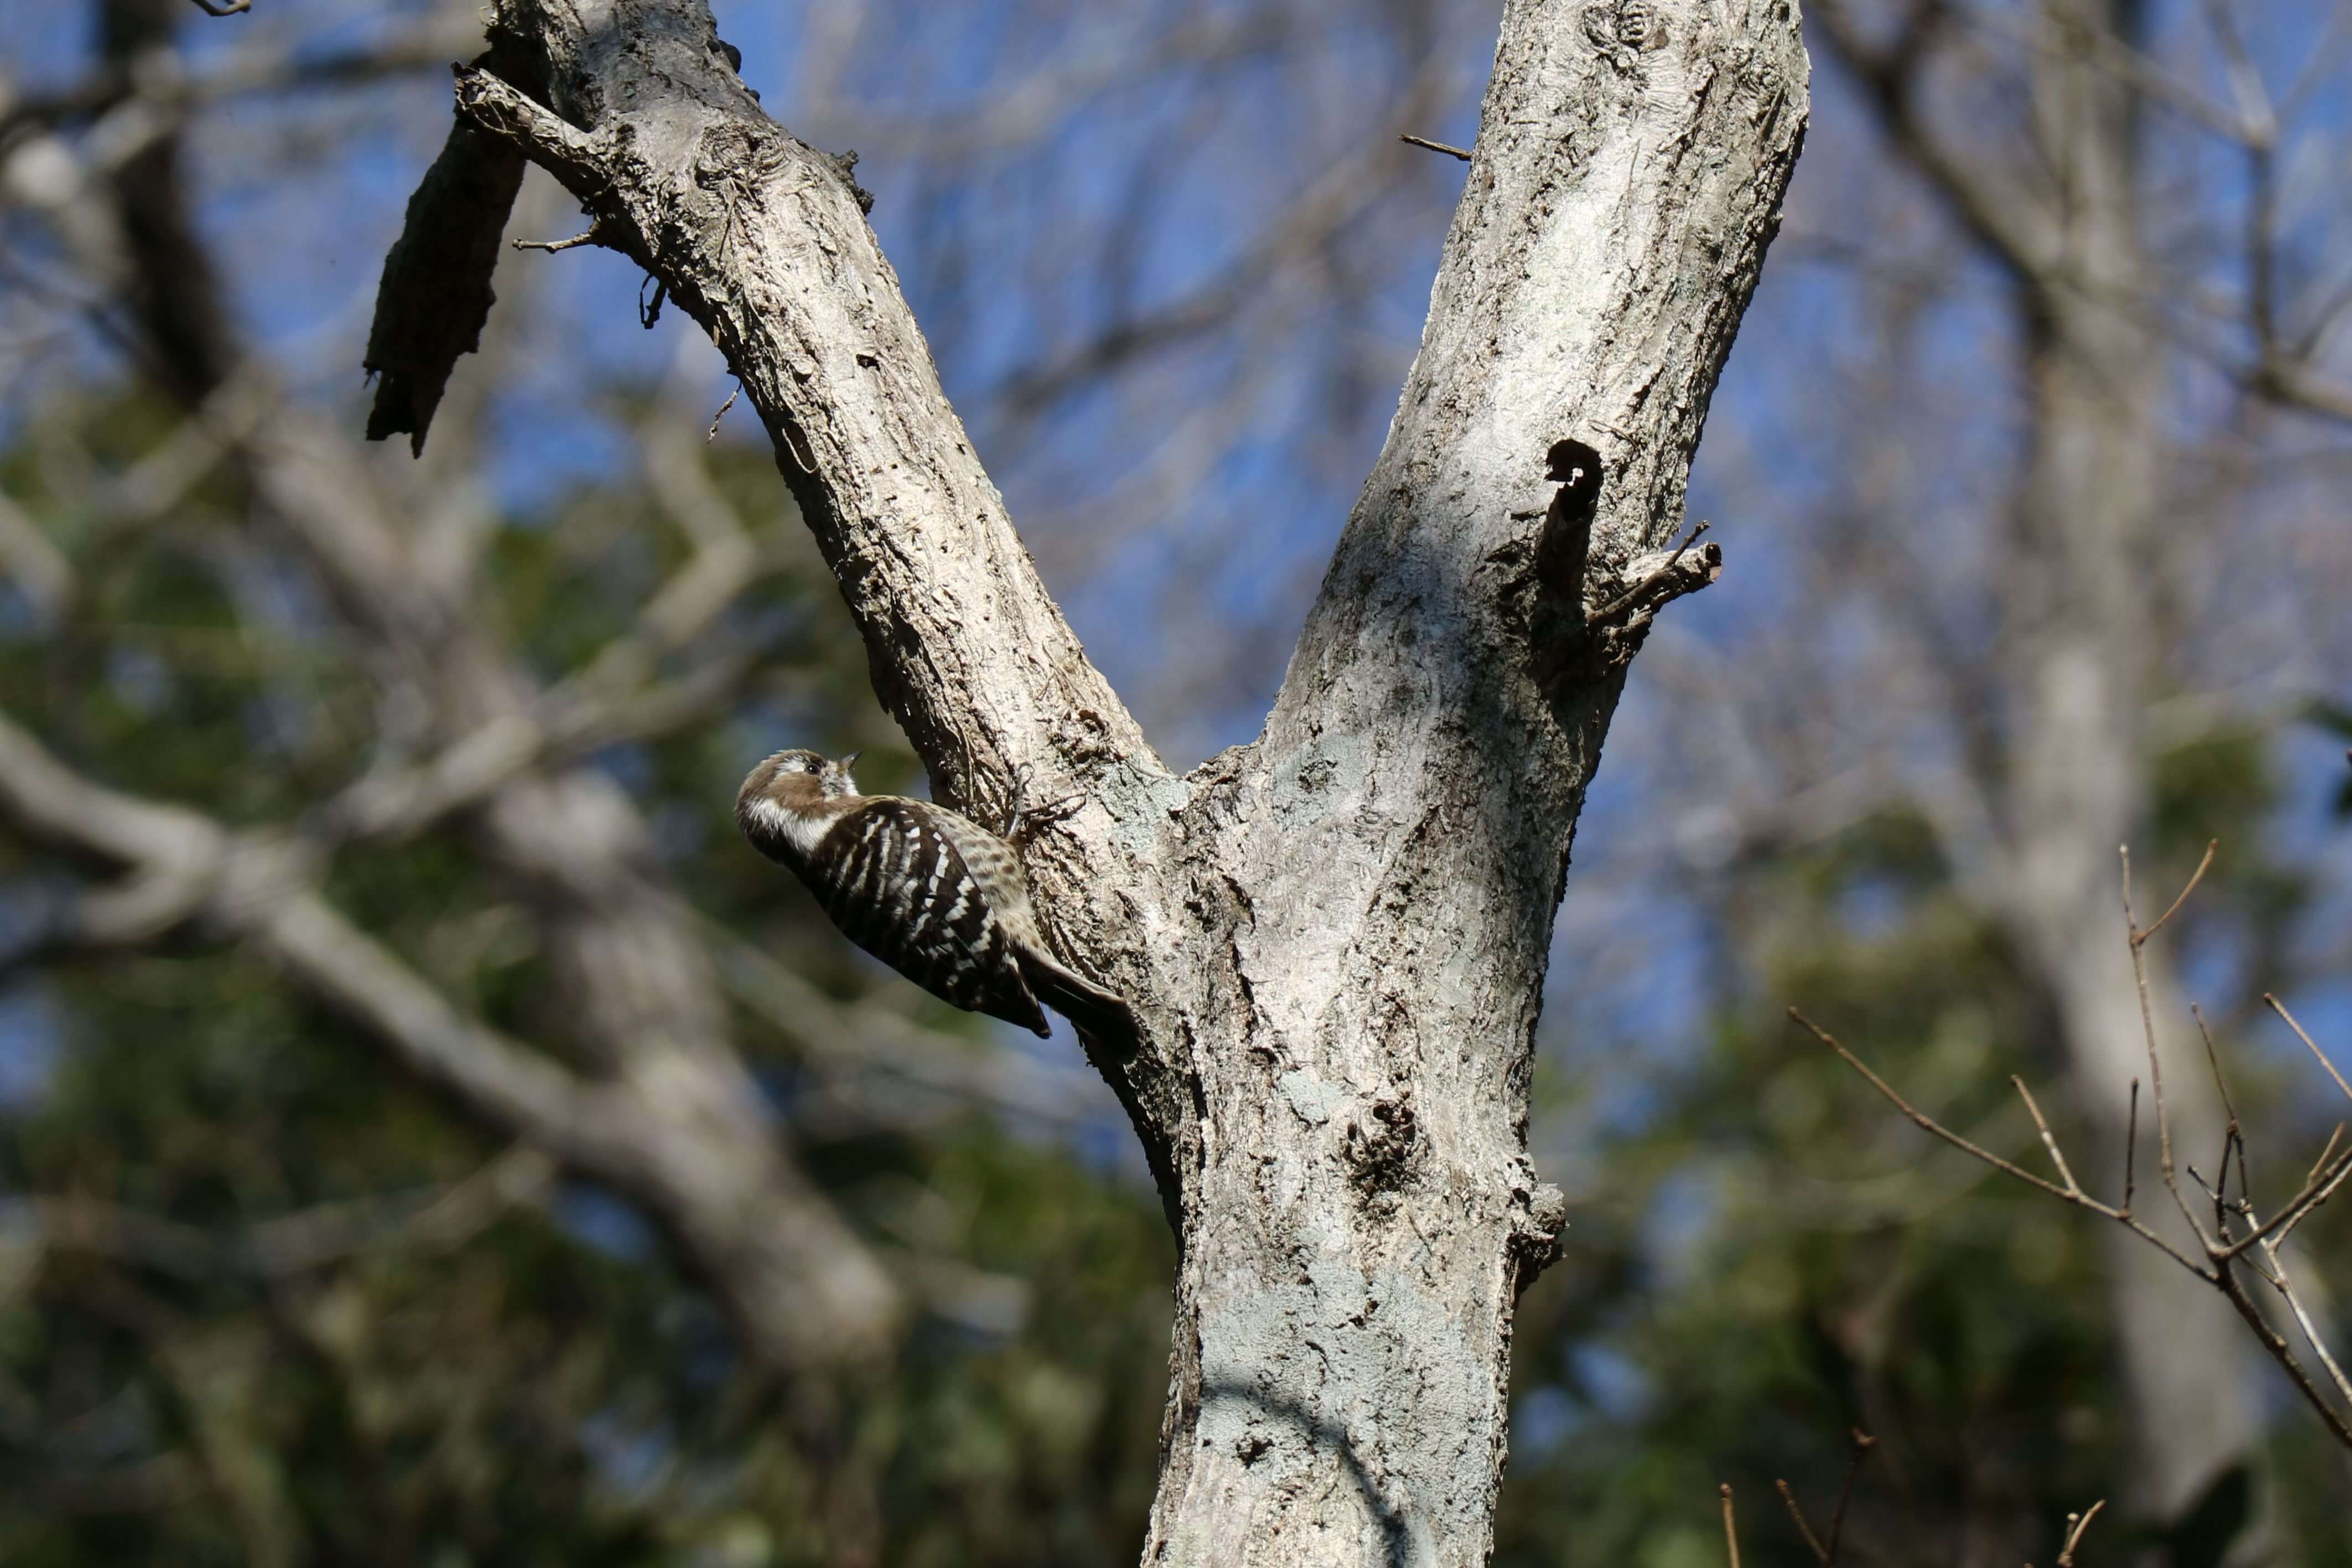 コゲラが冬枯れの木の幹にとまっている写真です。コゲラは小型のキツツキの仲間で、白と黒のまだら模様の羽根が特徴です。